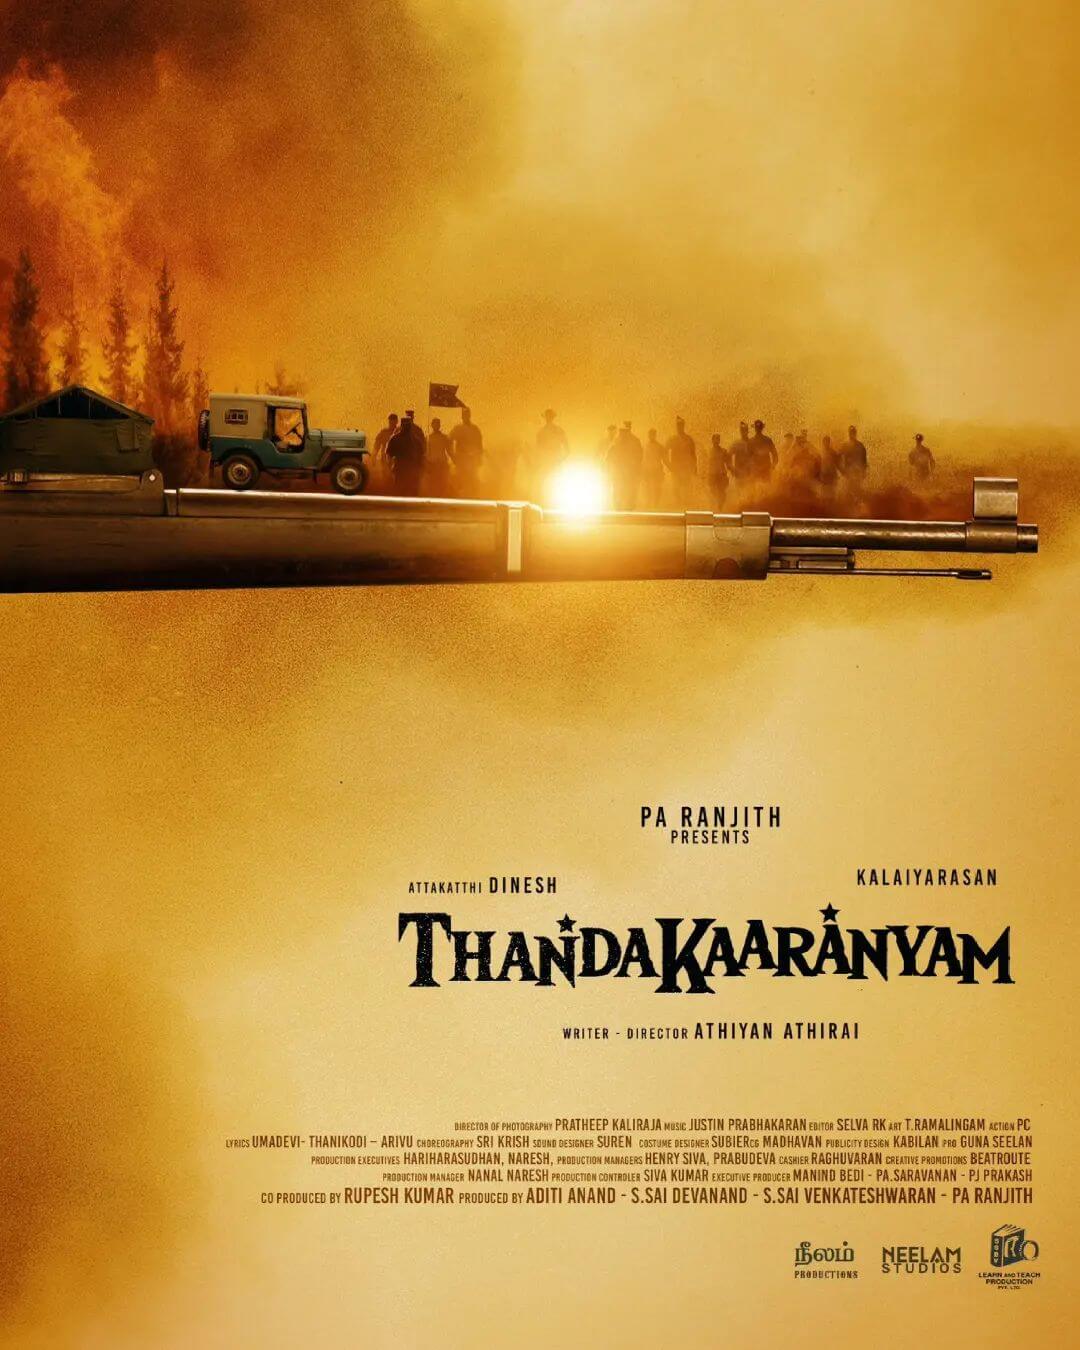 Thandakaaranyam poster